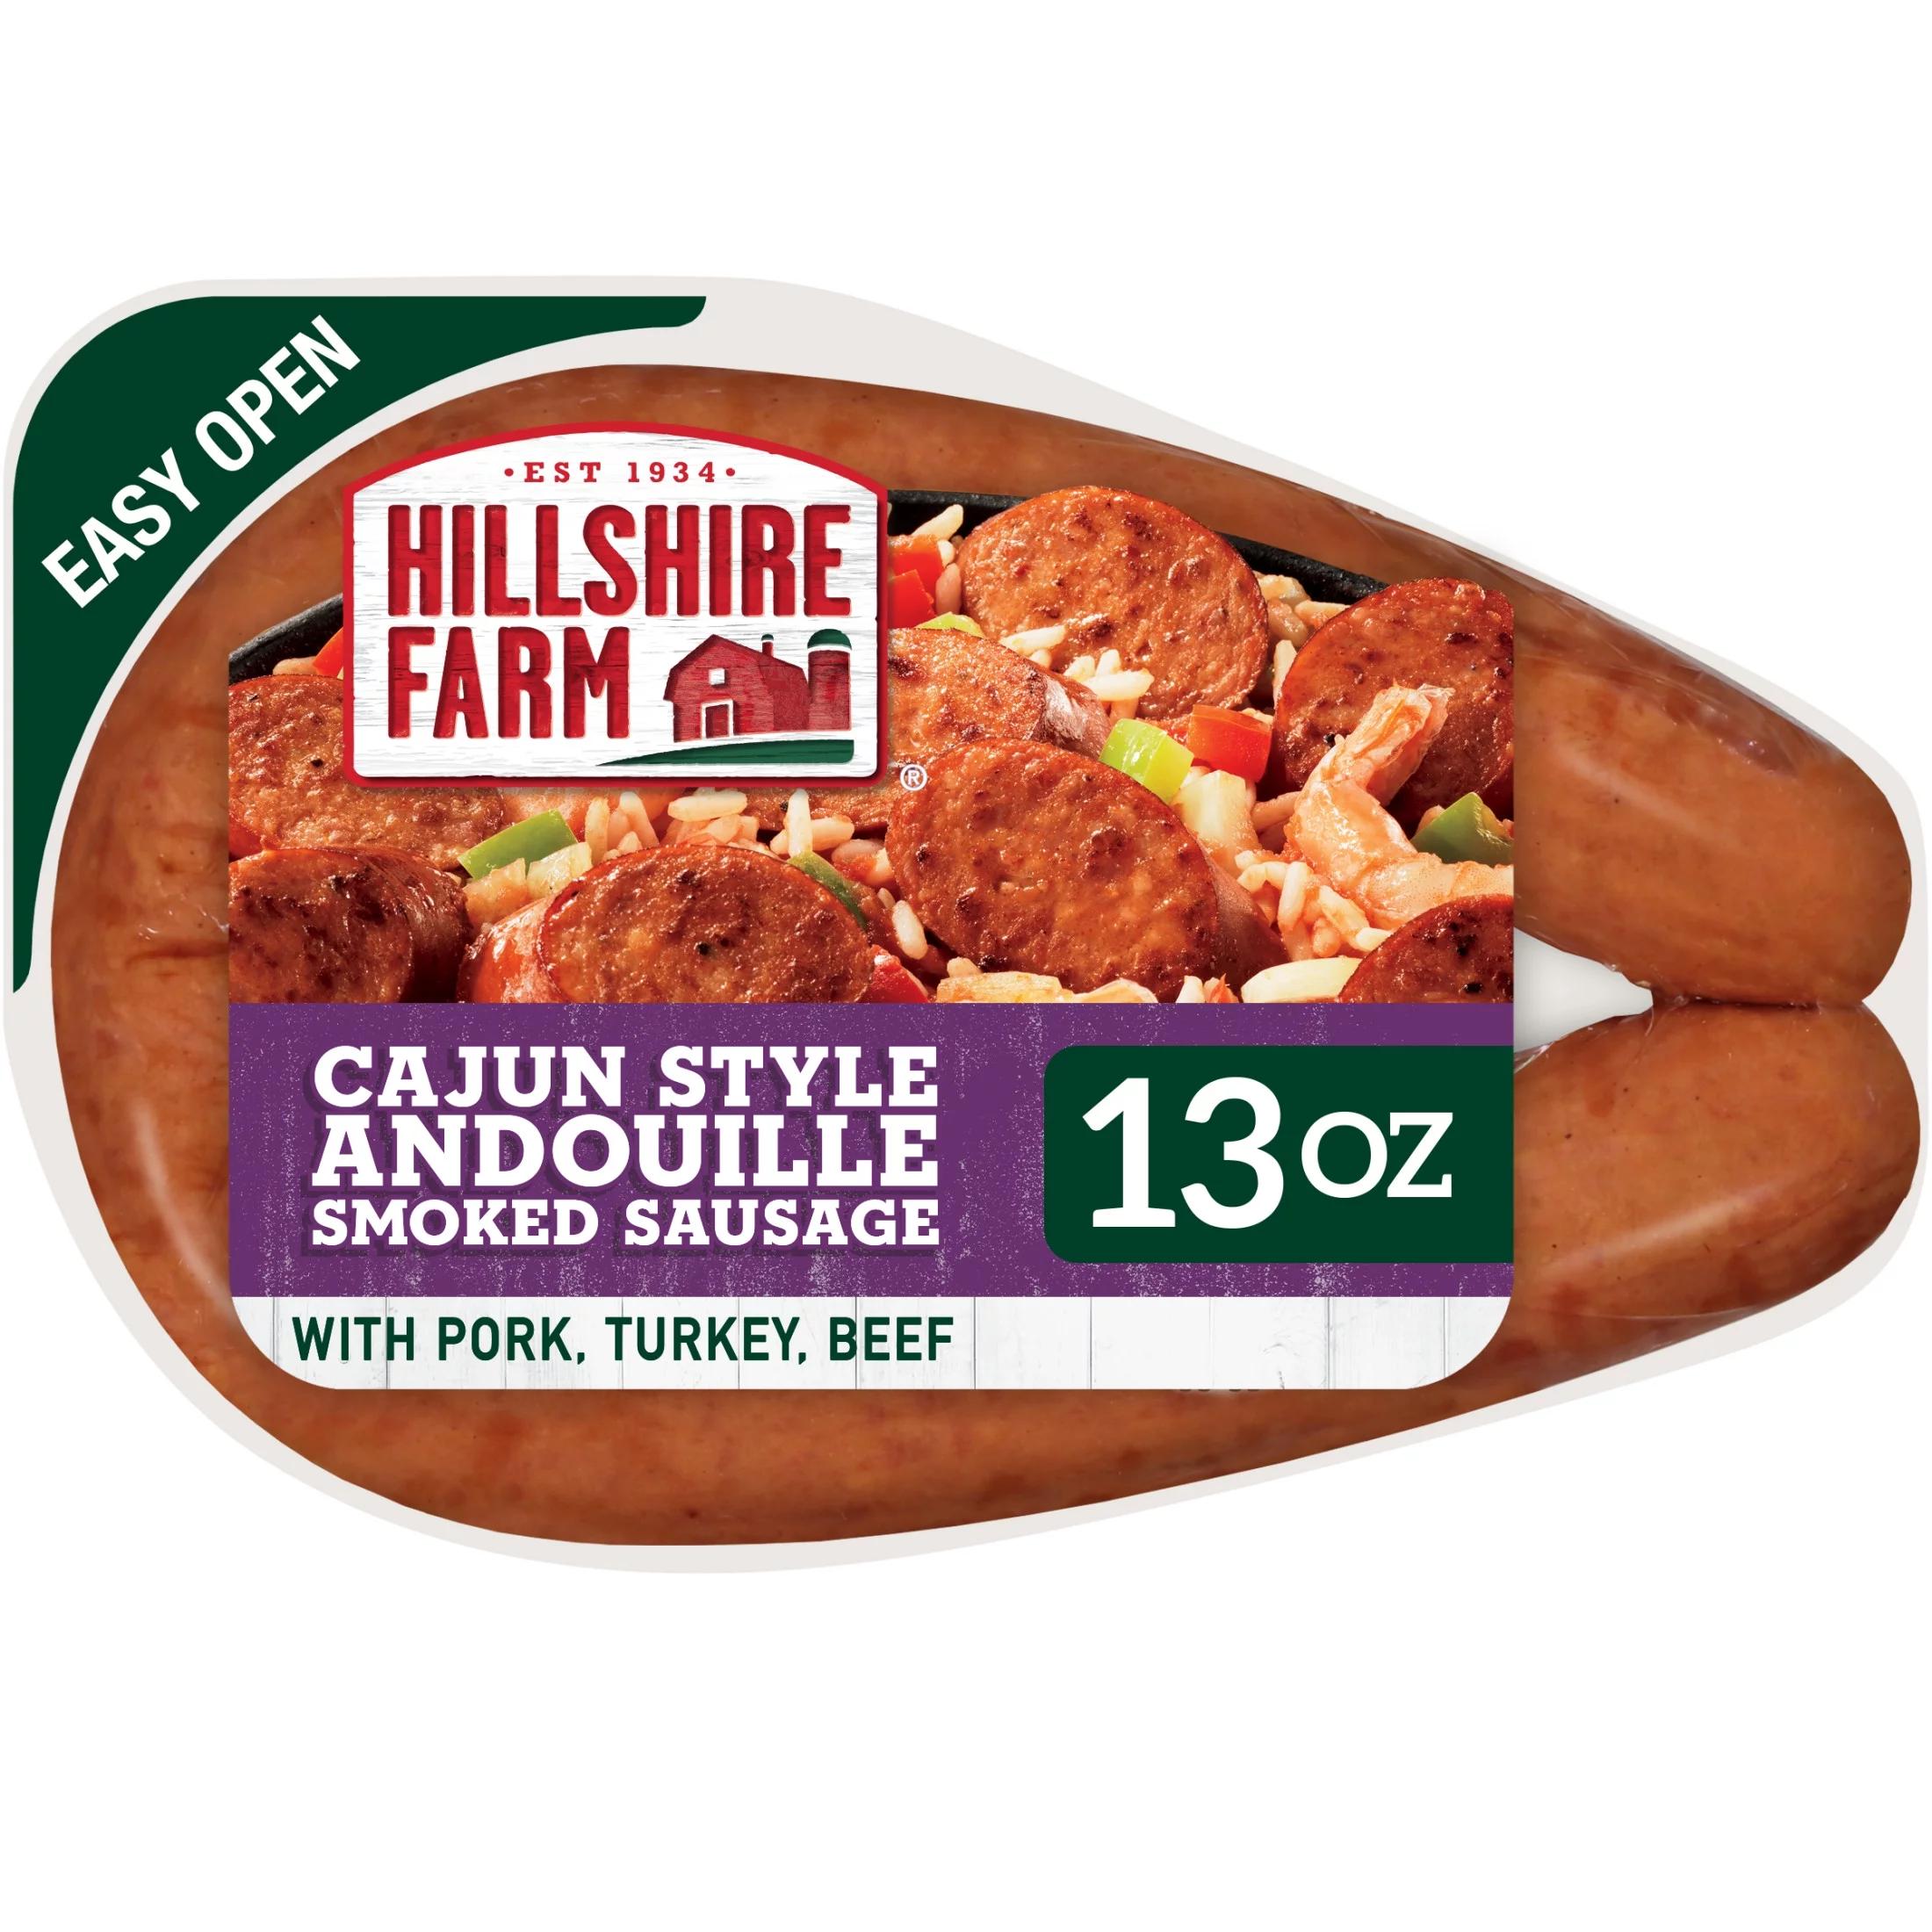 cajun smoked sausage - What does Cajun andouille sausage taste like